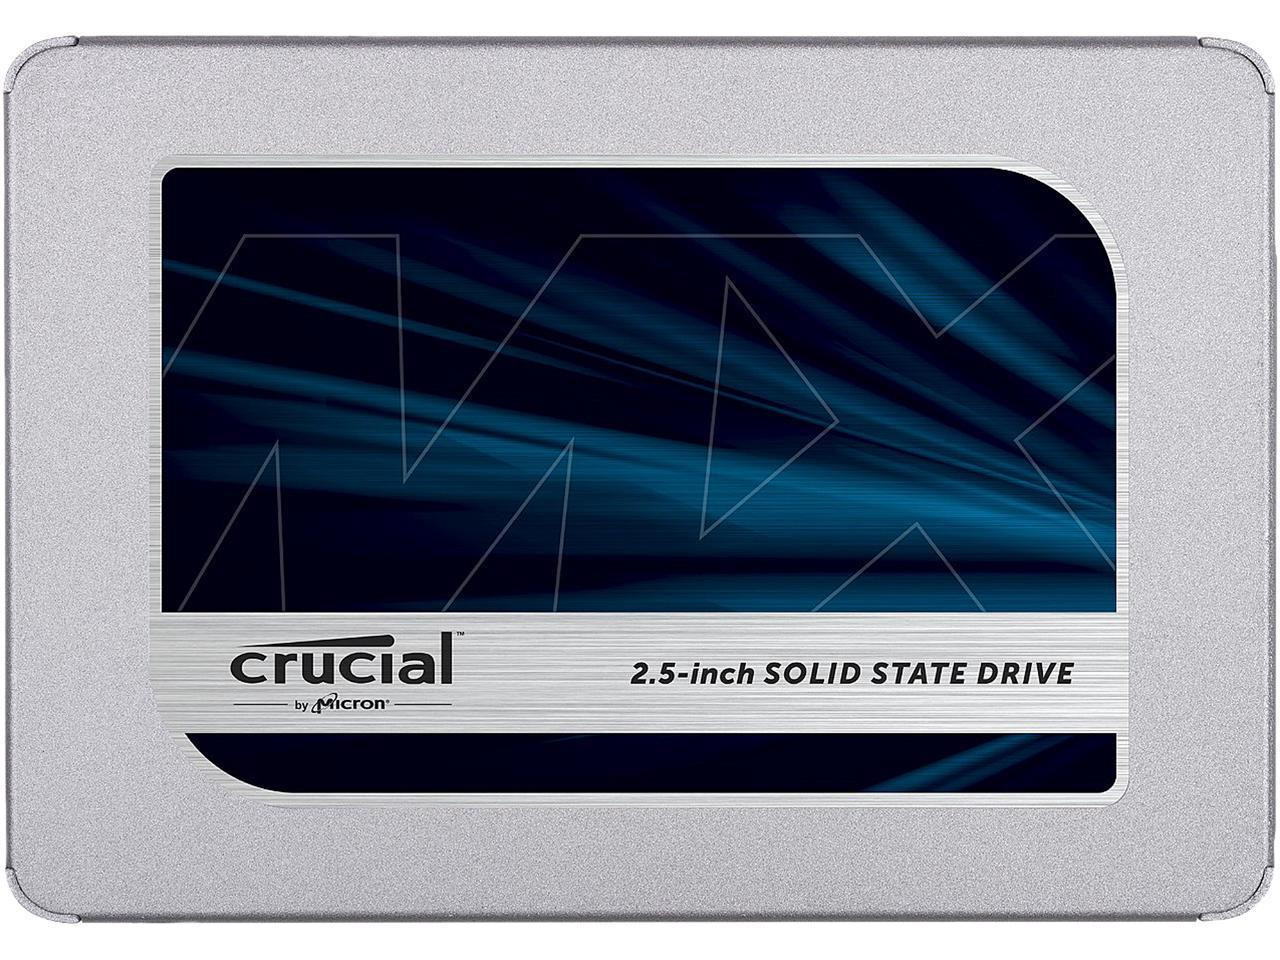 Immagine pubblicata in relazione al seguente contenuto: Crucial introduce la linea di SSD MX500 con memoria 3D NAND di Micron | Nome immagine: news27660_Crucial-SSD-MX500_2.jpg